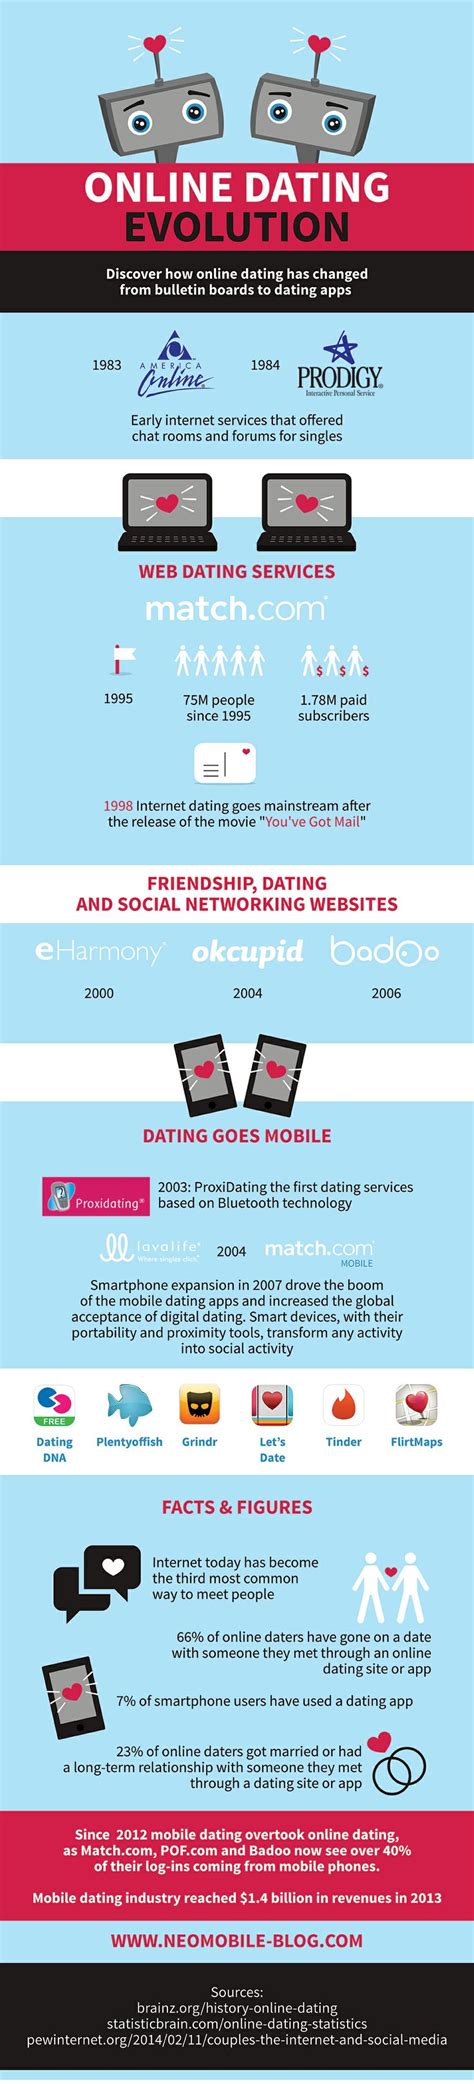 online dating evolution